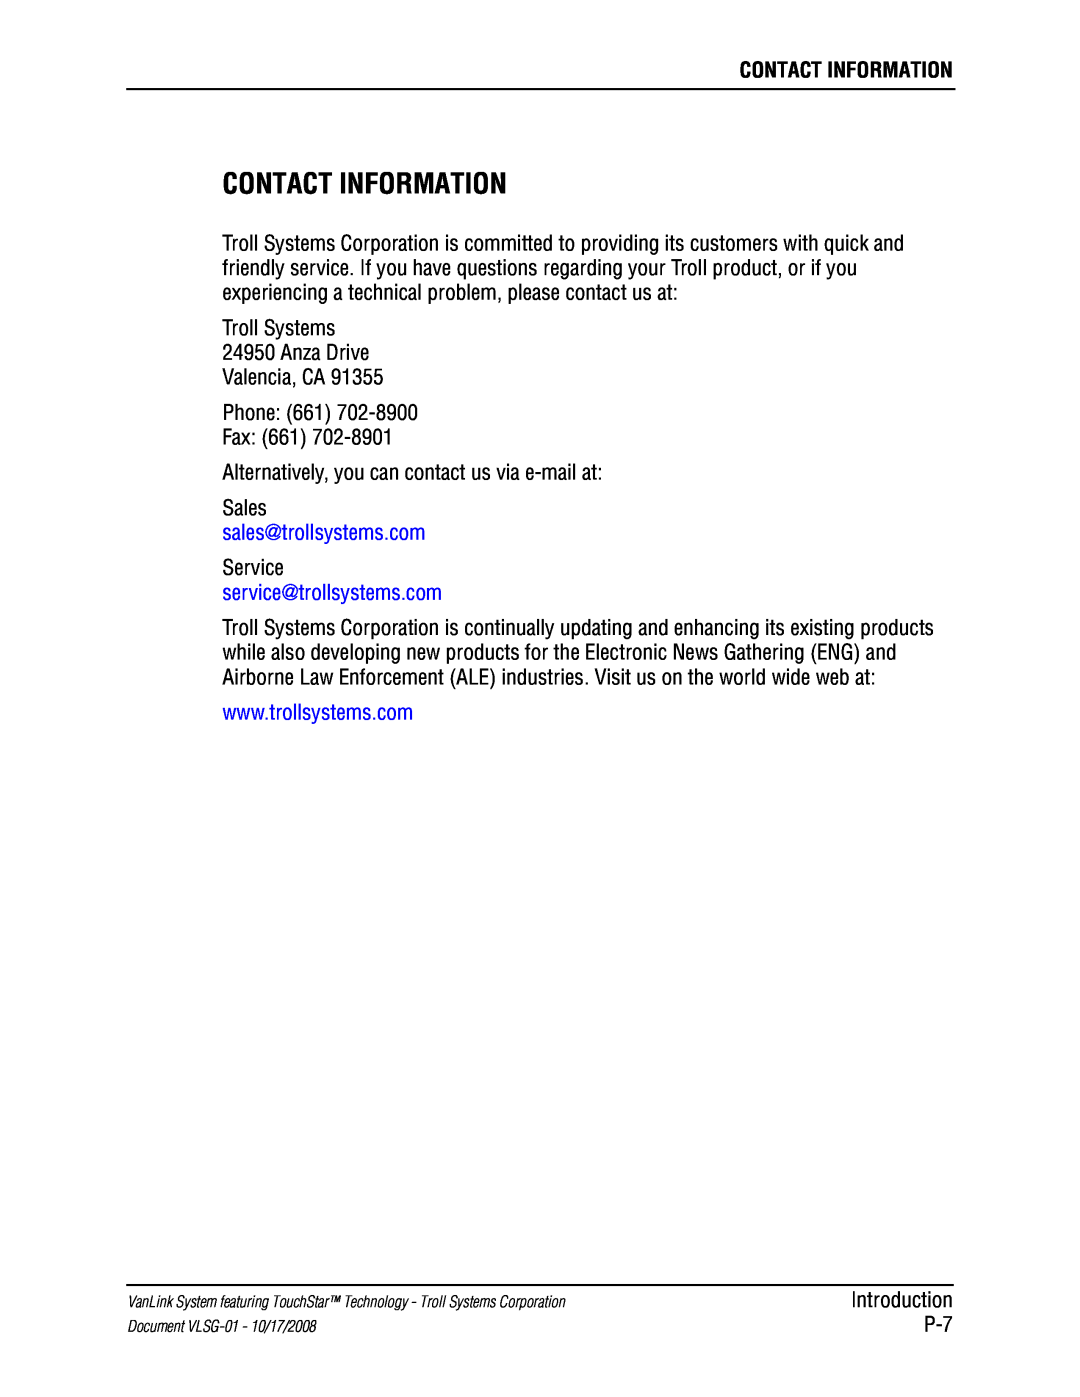 Kyocera VLSG-01 manual Contact Information 